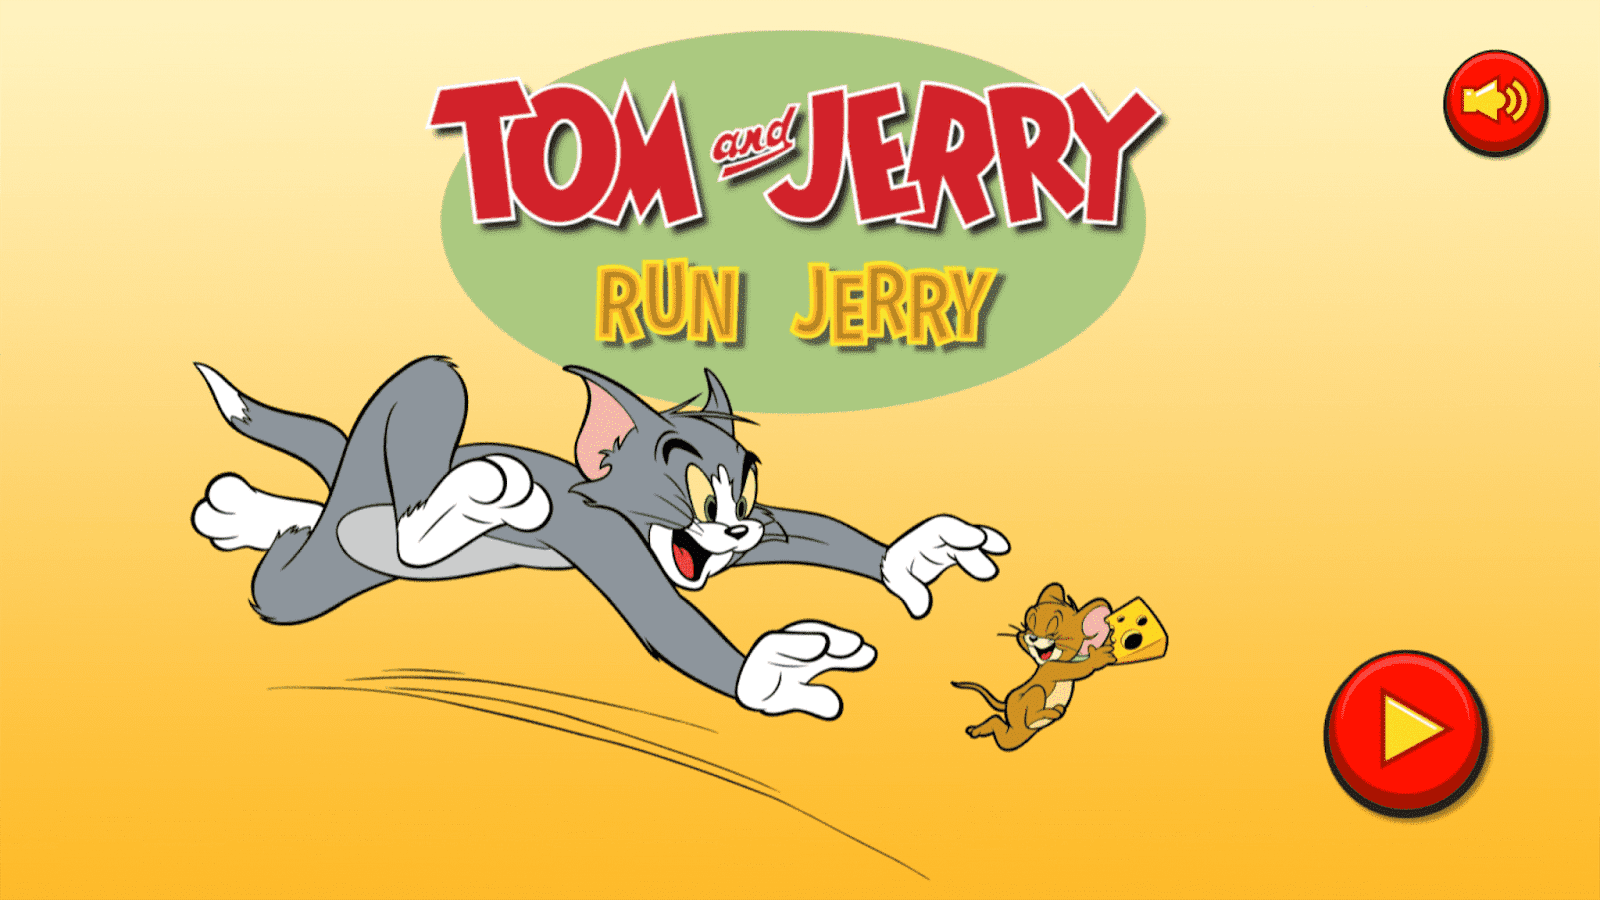 Tom i drink. Том и Джерри. Том и Джерри Джерри. Том и Джерри бегут. Том и Джерри игра.